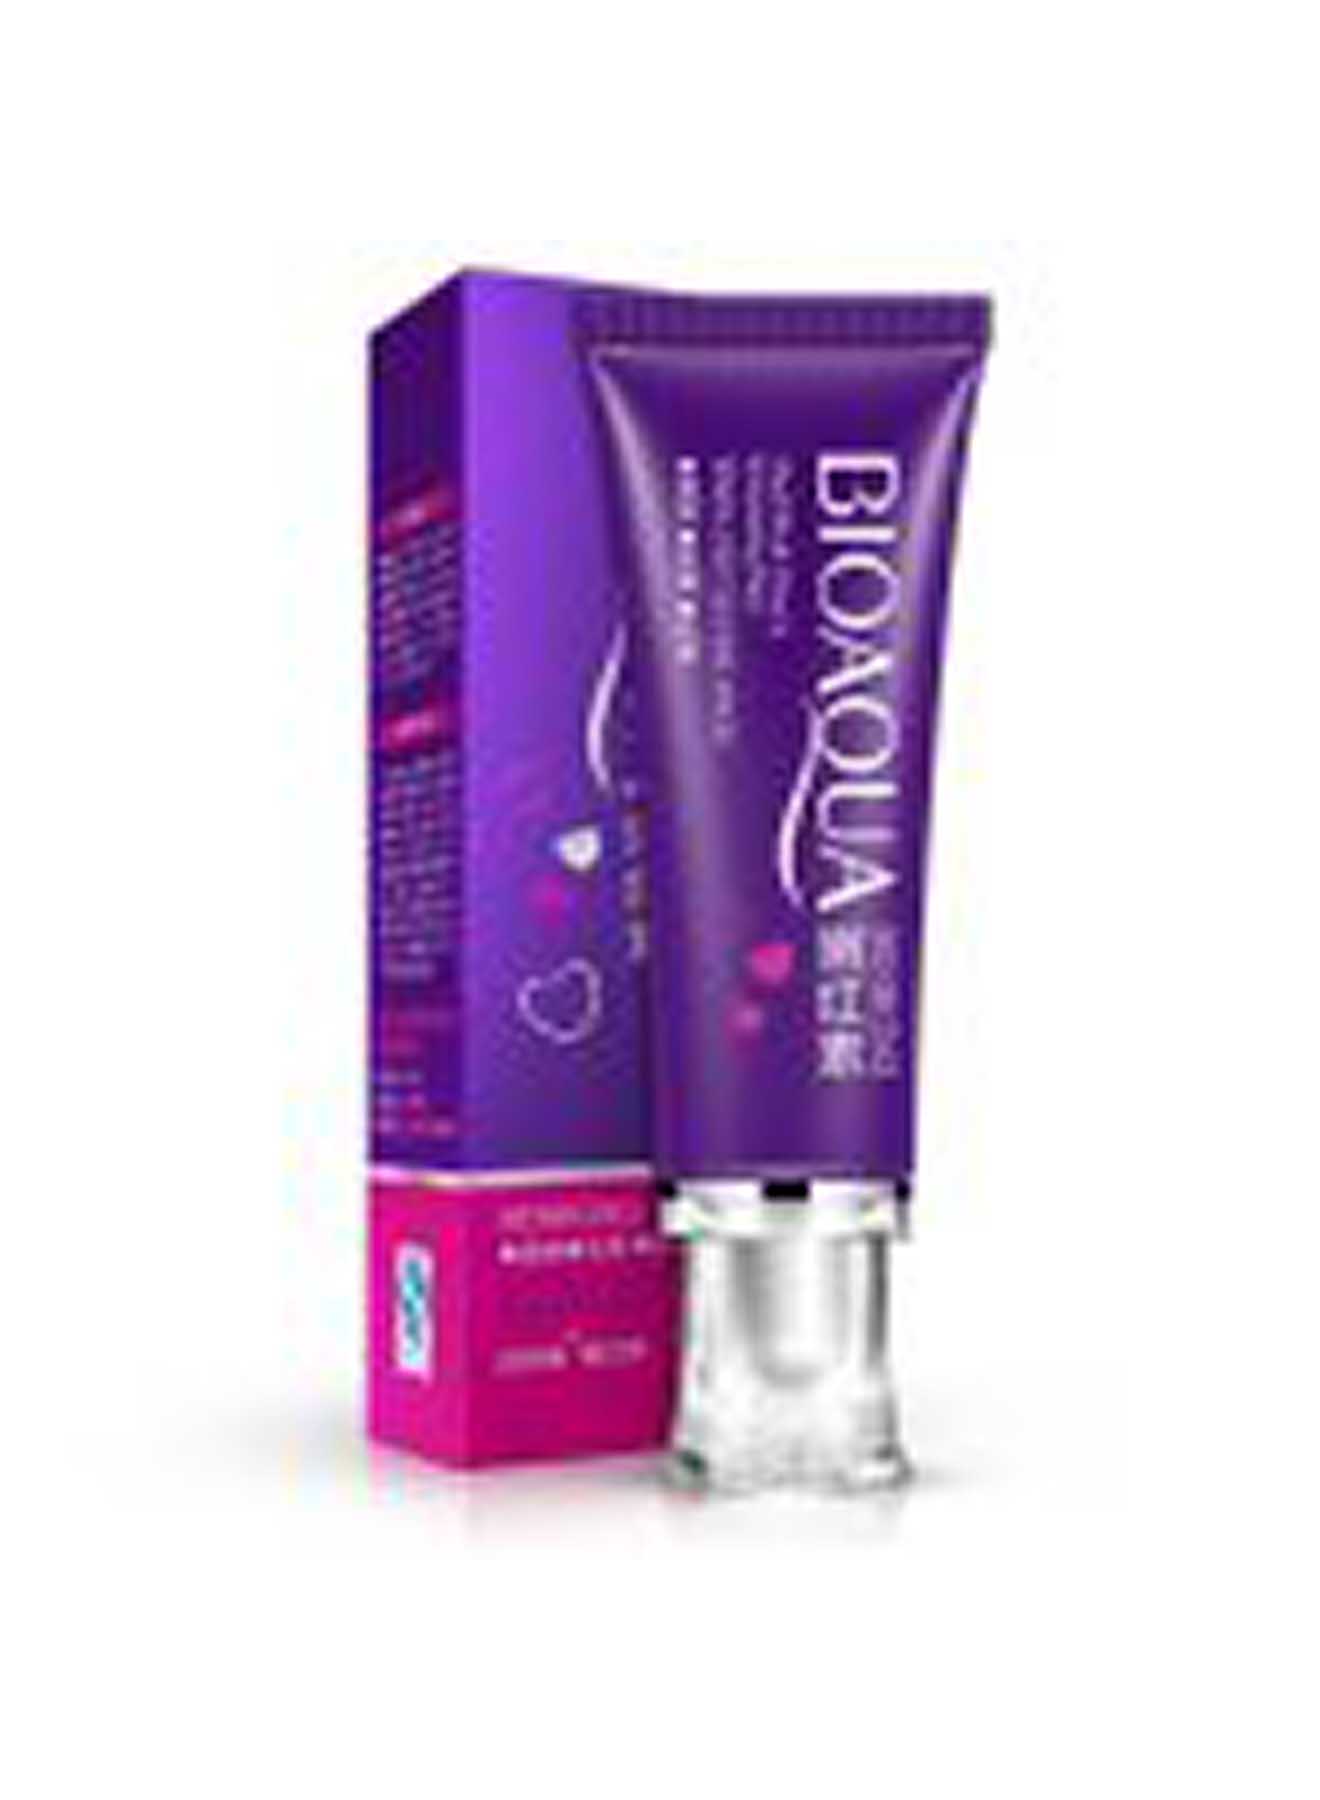 BioAQUA Nenhong Intimate Magic Skin Whitening Cream 30g Value Pack of 2 